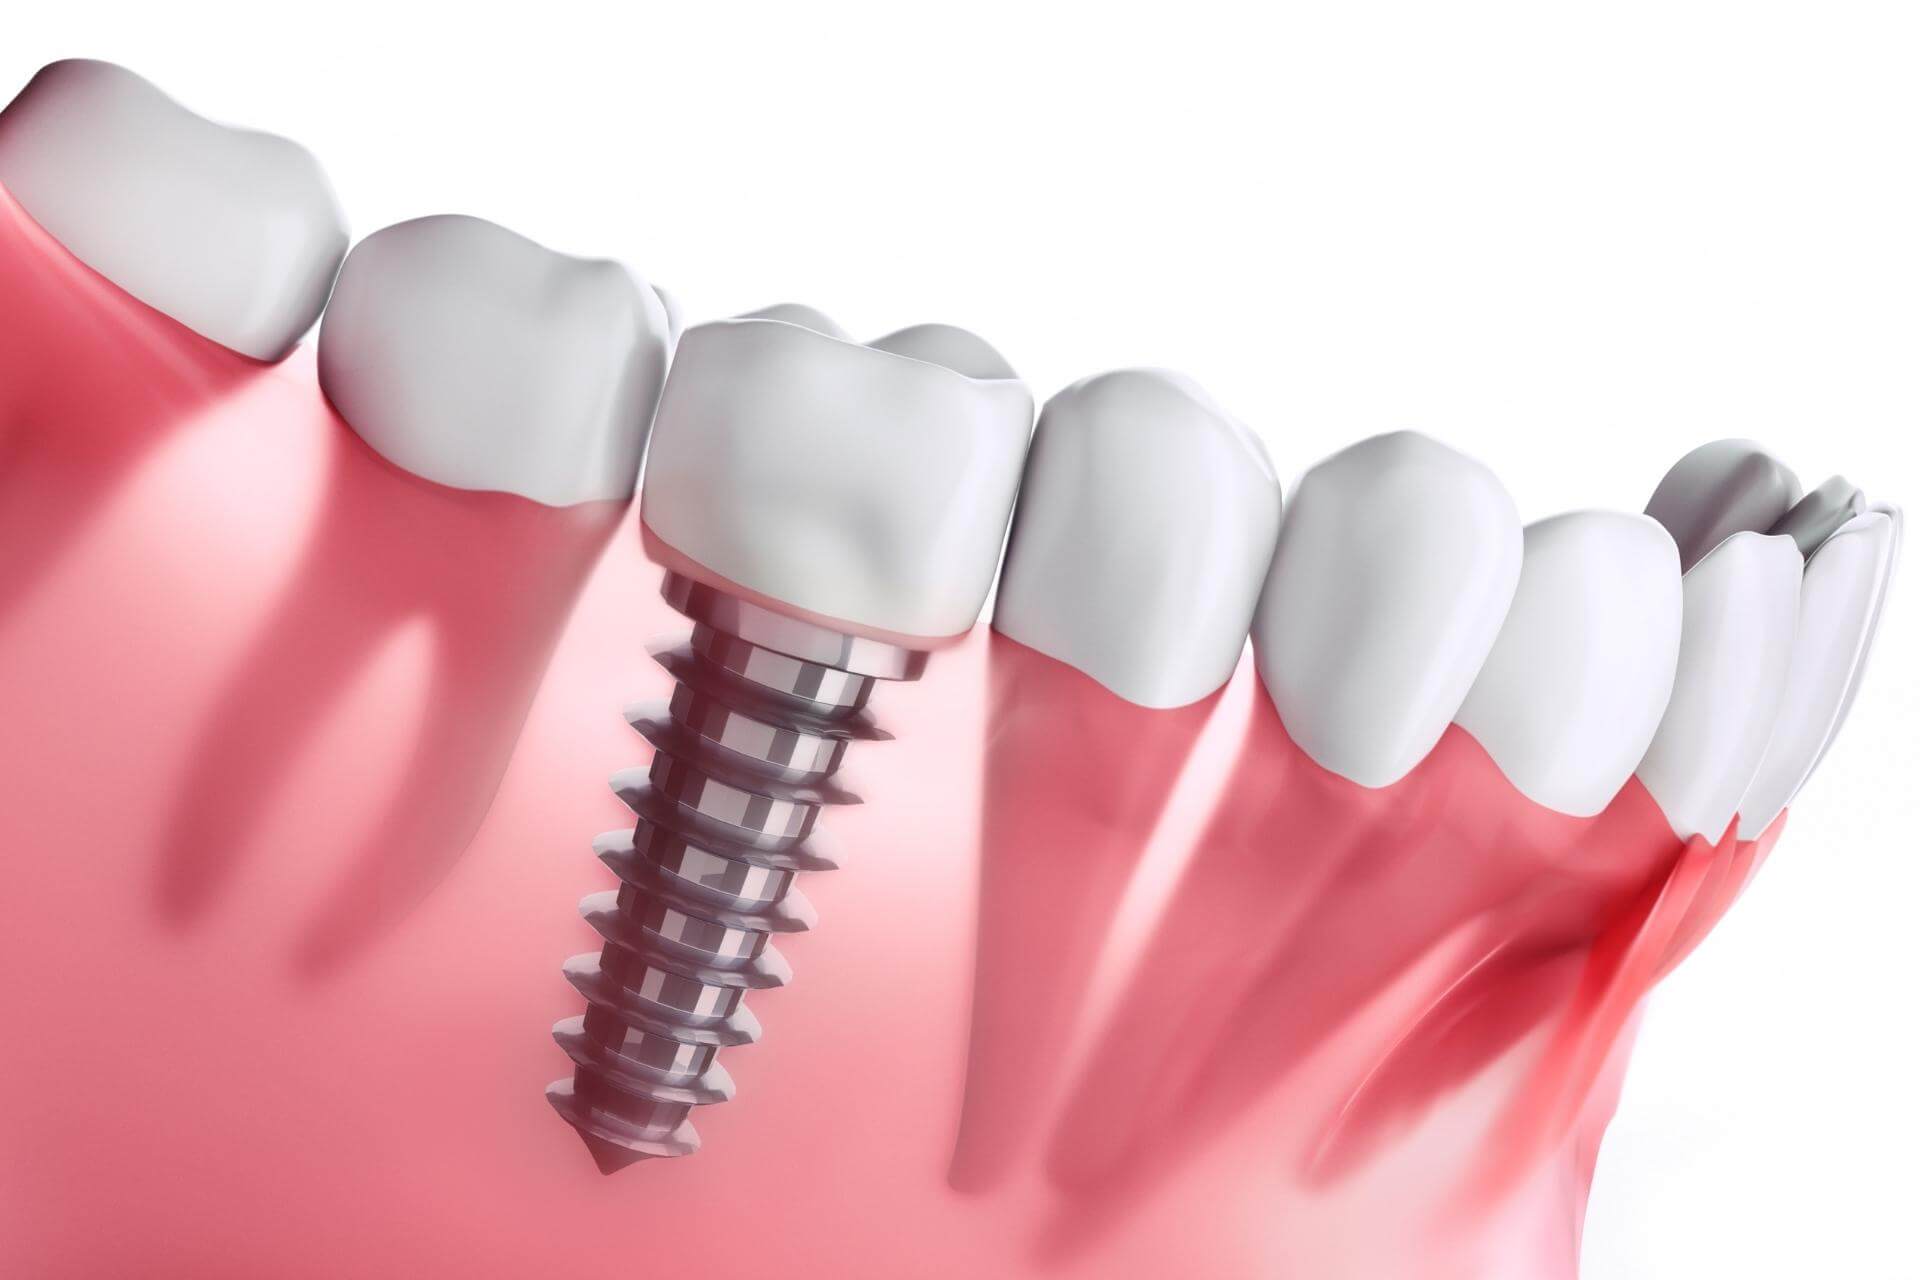 implantologia dentale di nuova generazione